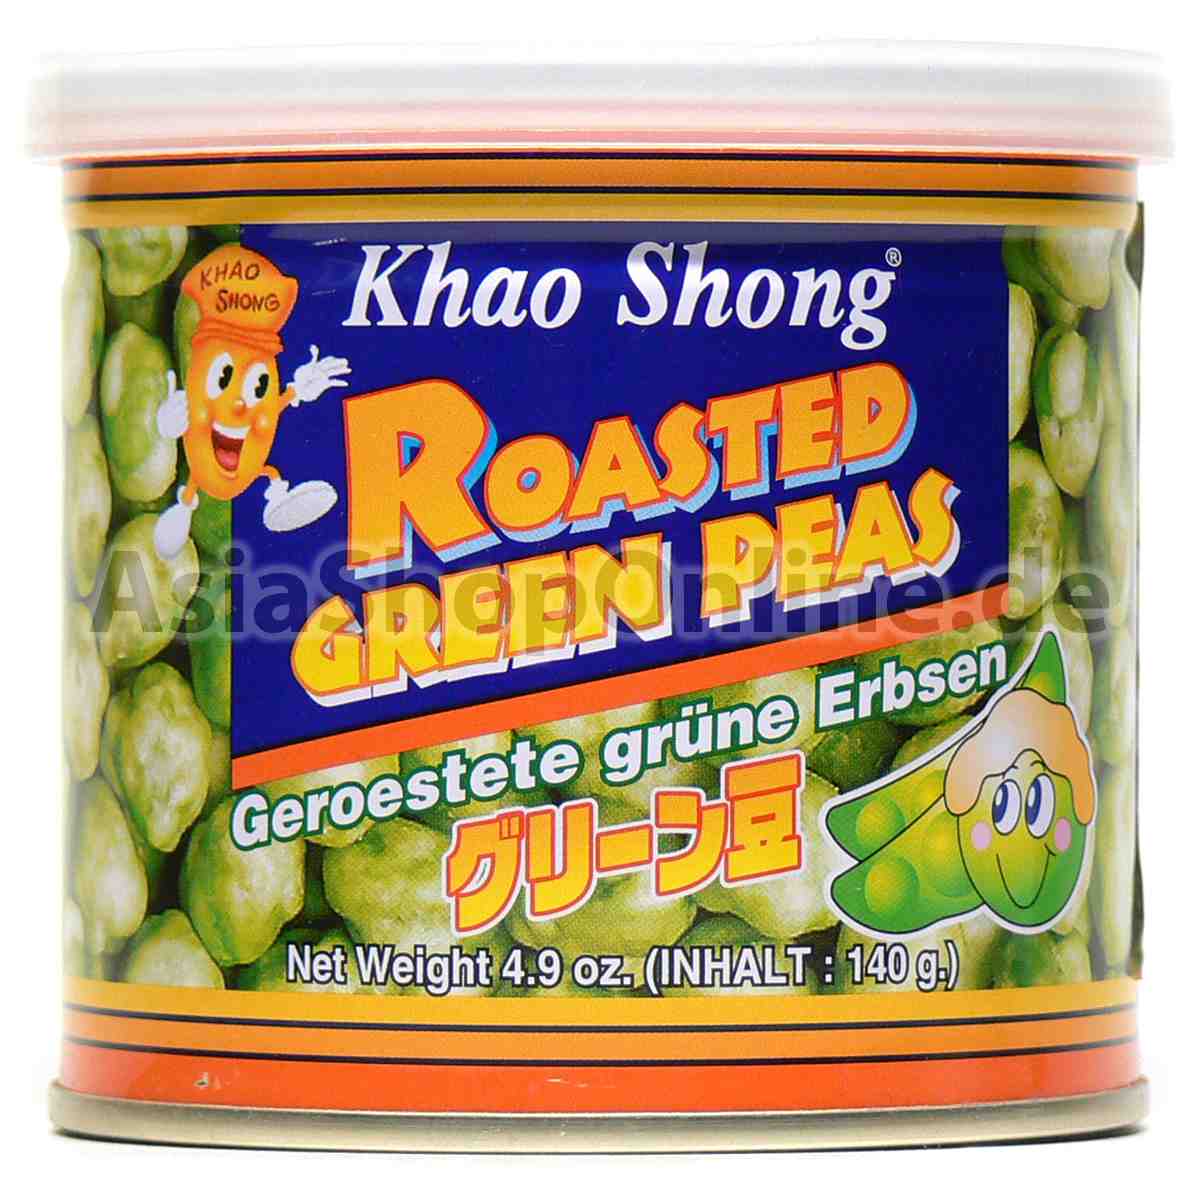 Geröstete grüne Erbsen - Khao Shong - 140g